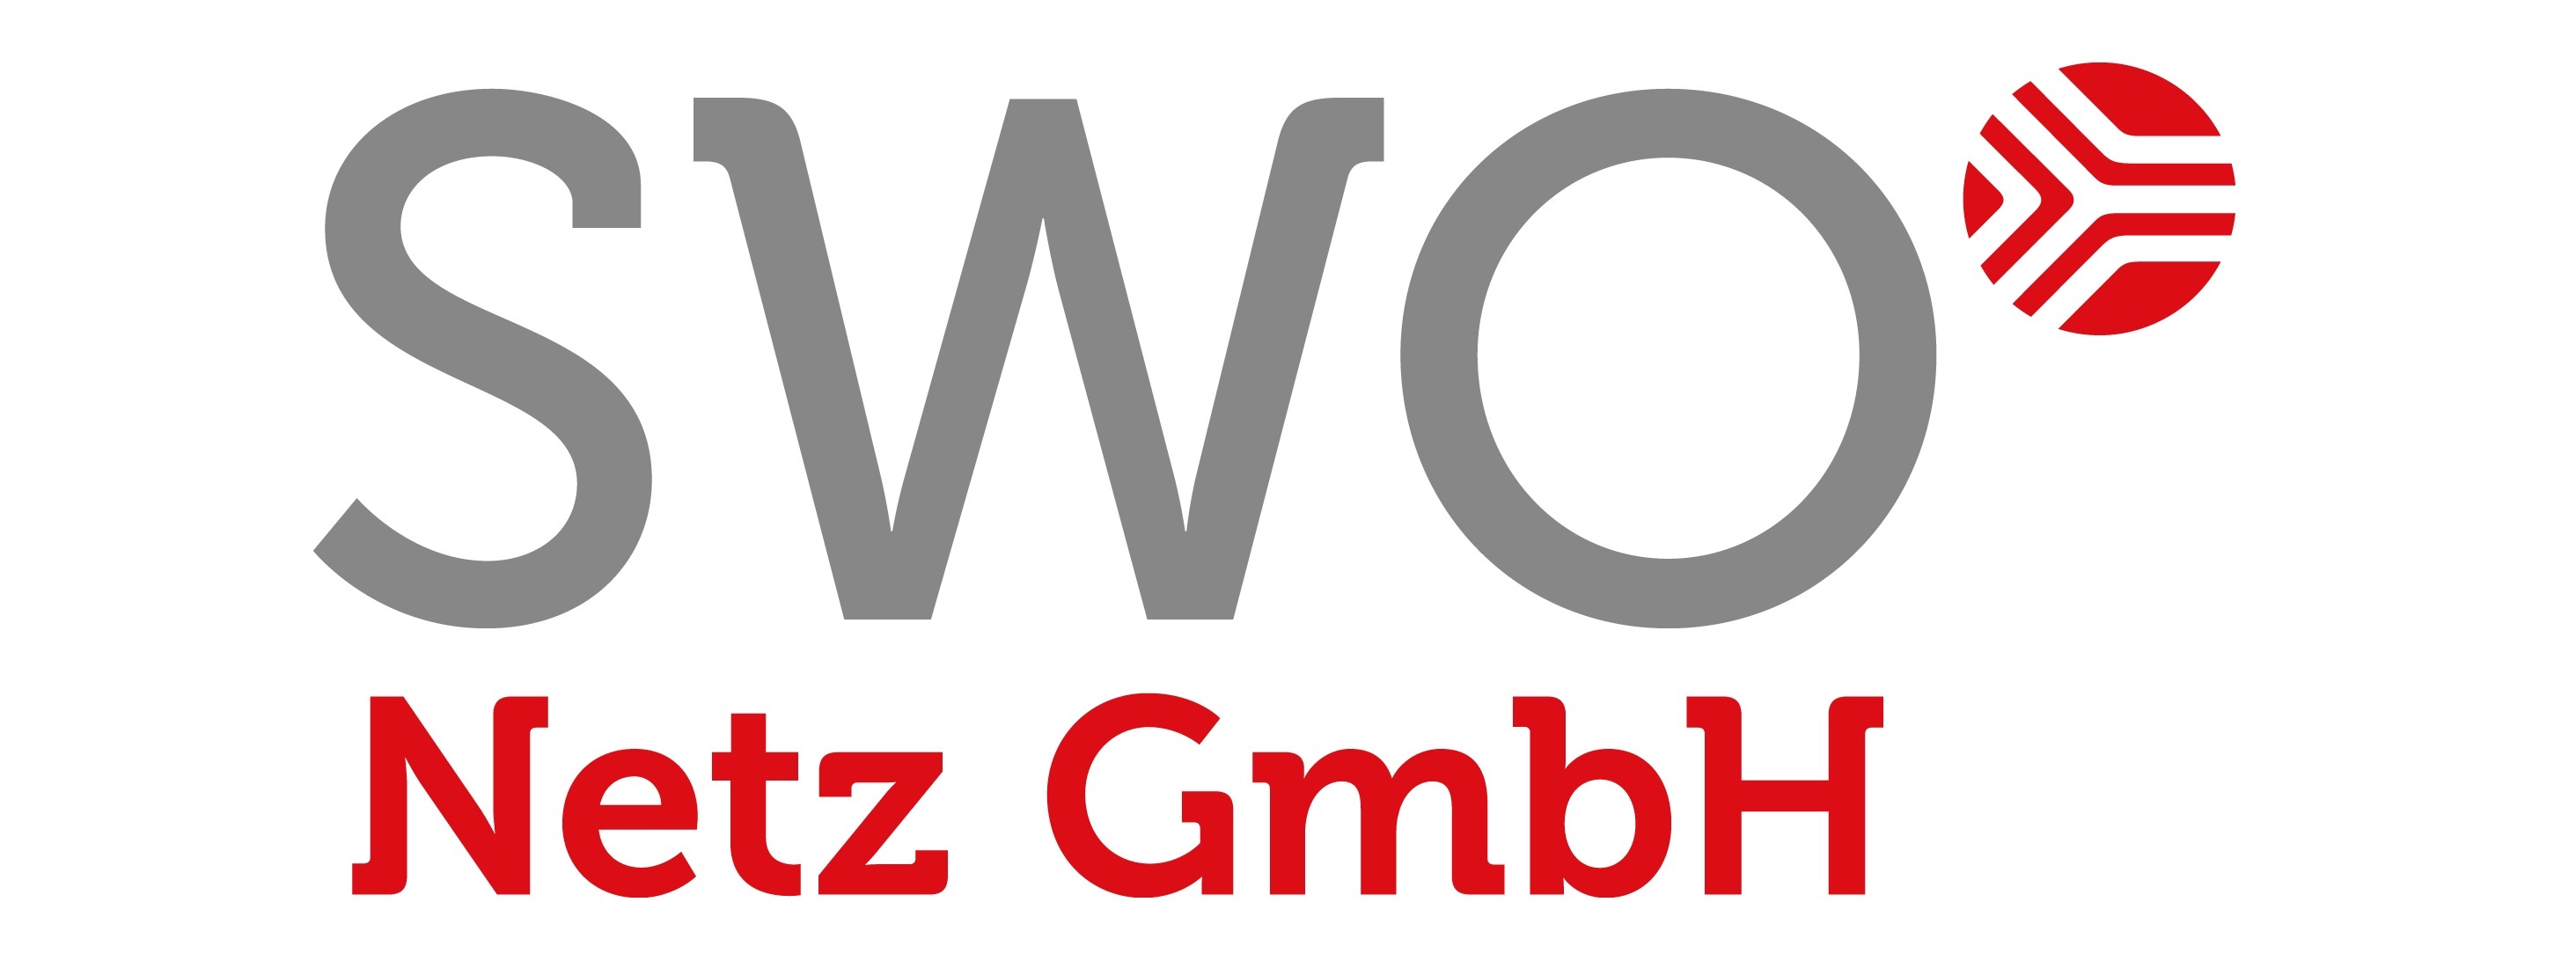 SWO Netz GmbH